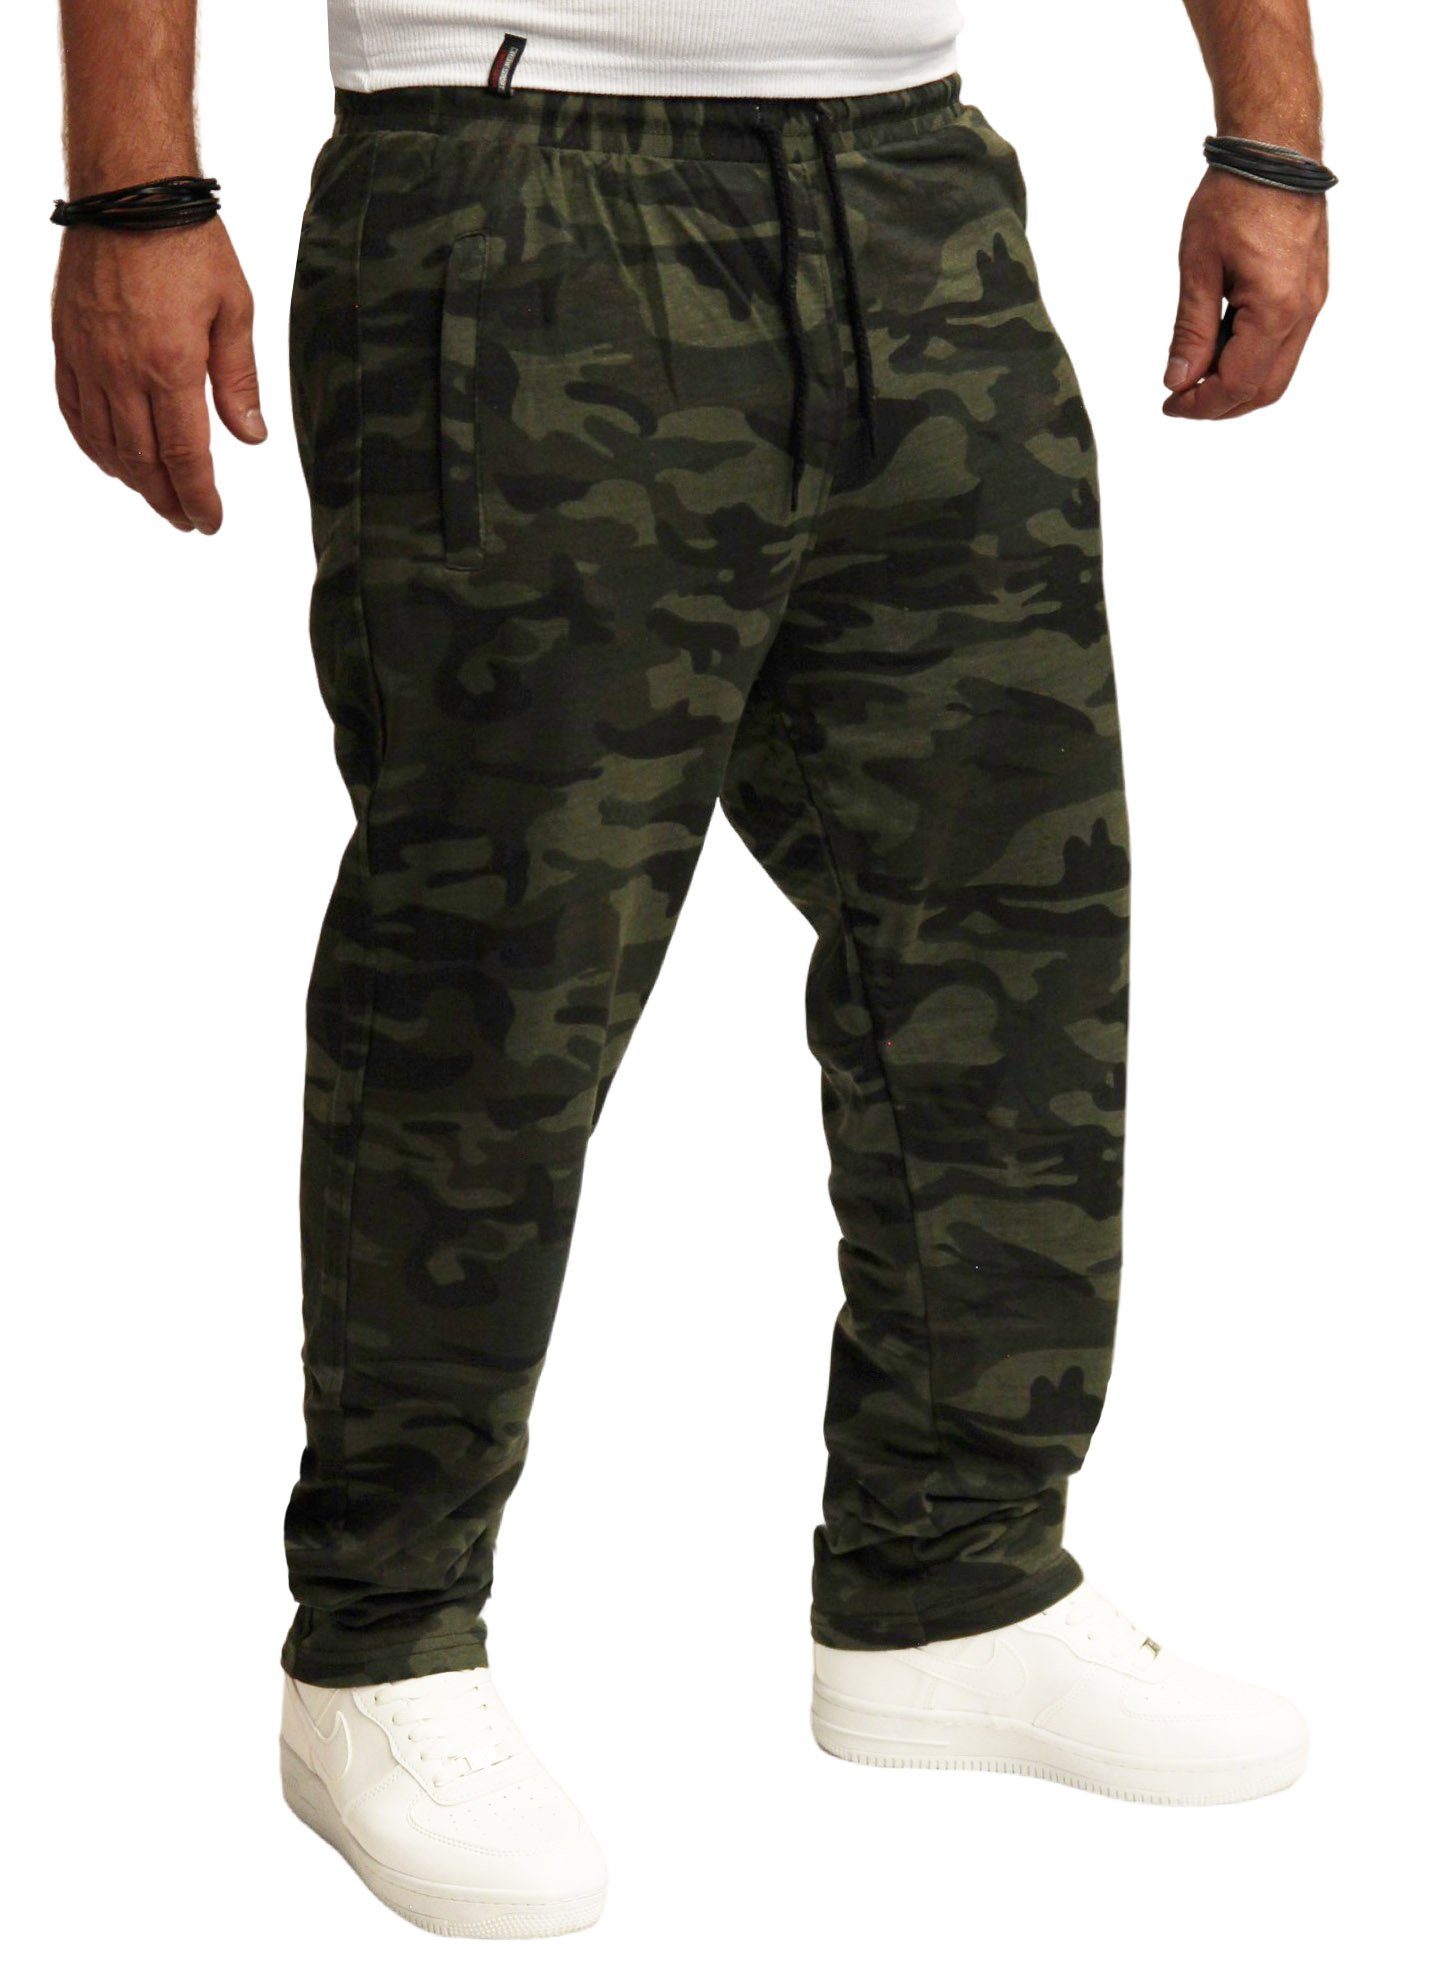 RMK Jogginghose Herren Trainingshose Jogginghose Fitnesshose Camouflage Army Tarn Hose Camouflage-Dunkel (2006)